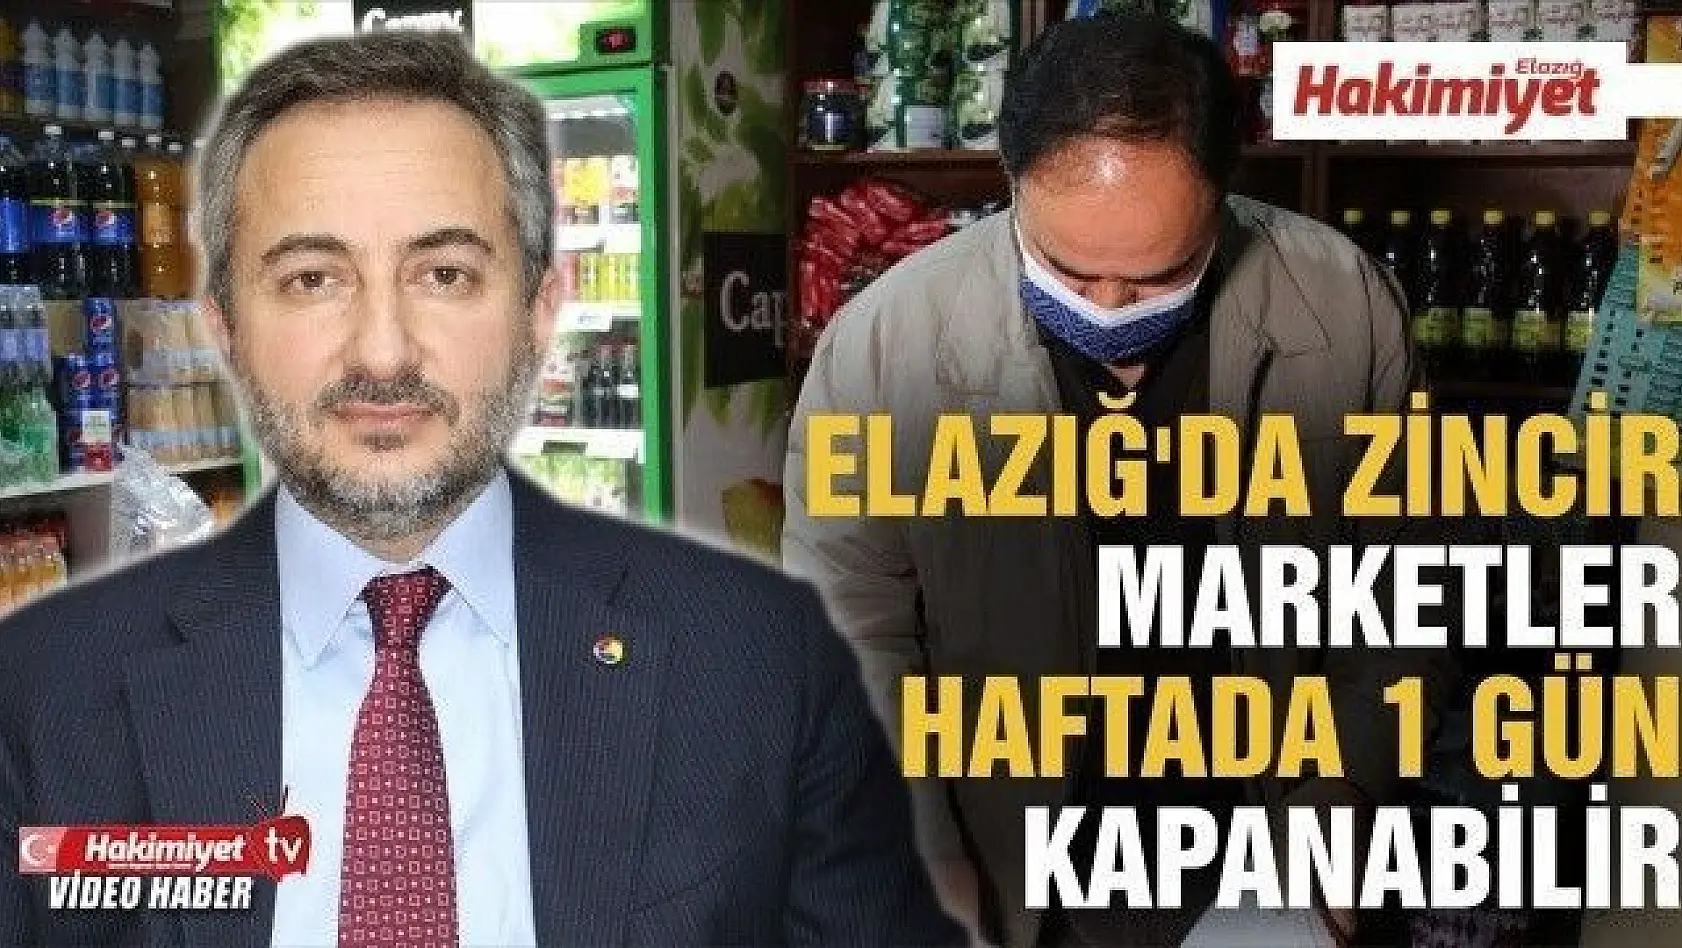 Yerel esnafa destek için, Elazığ'da zincir marketler haftada 1 gün kapanabilir